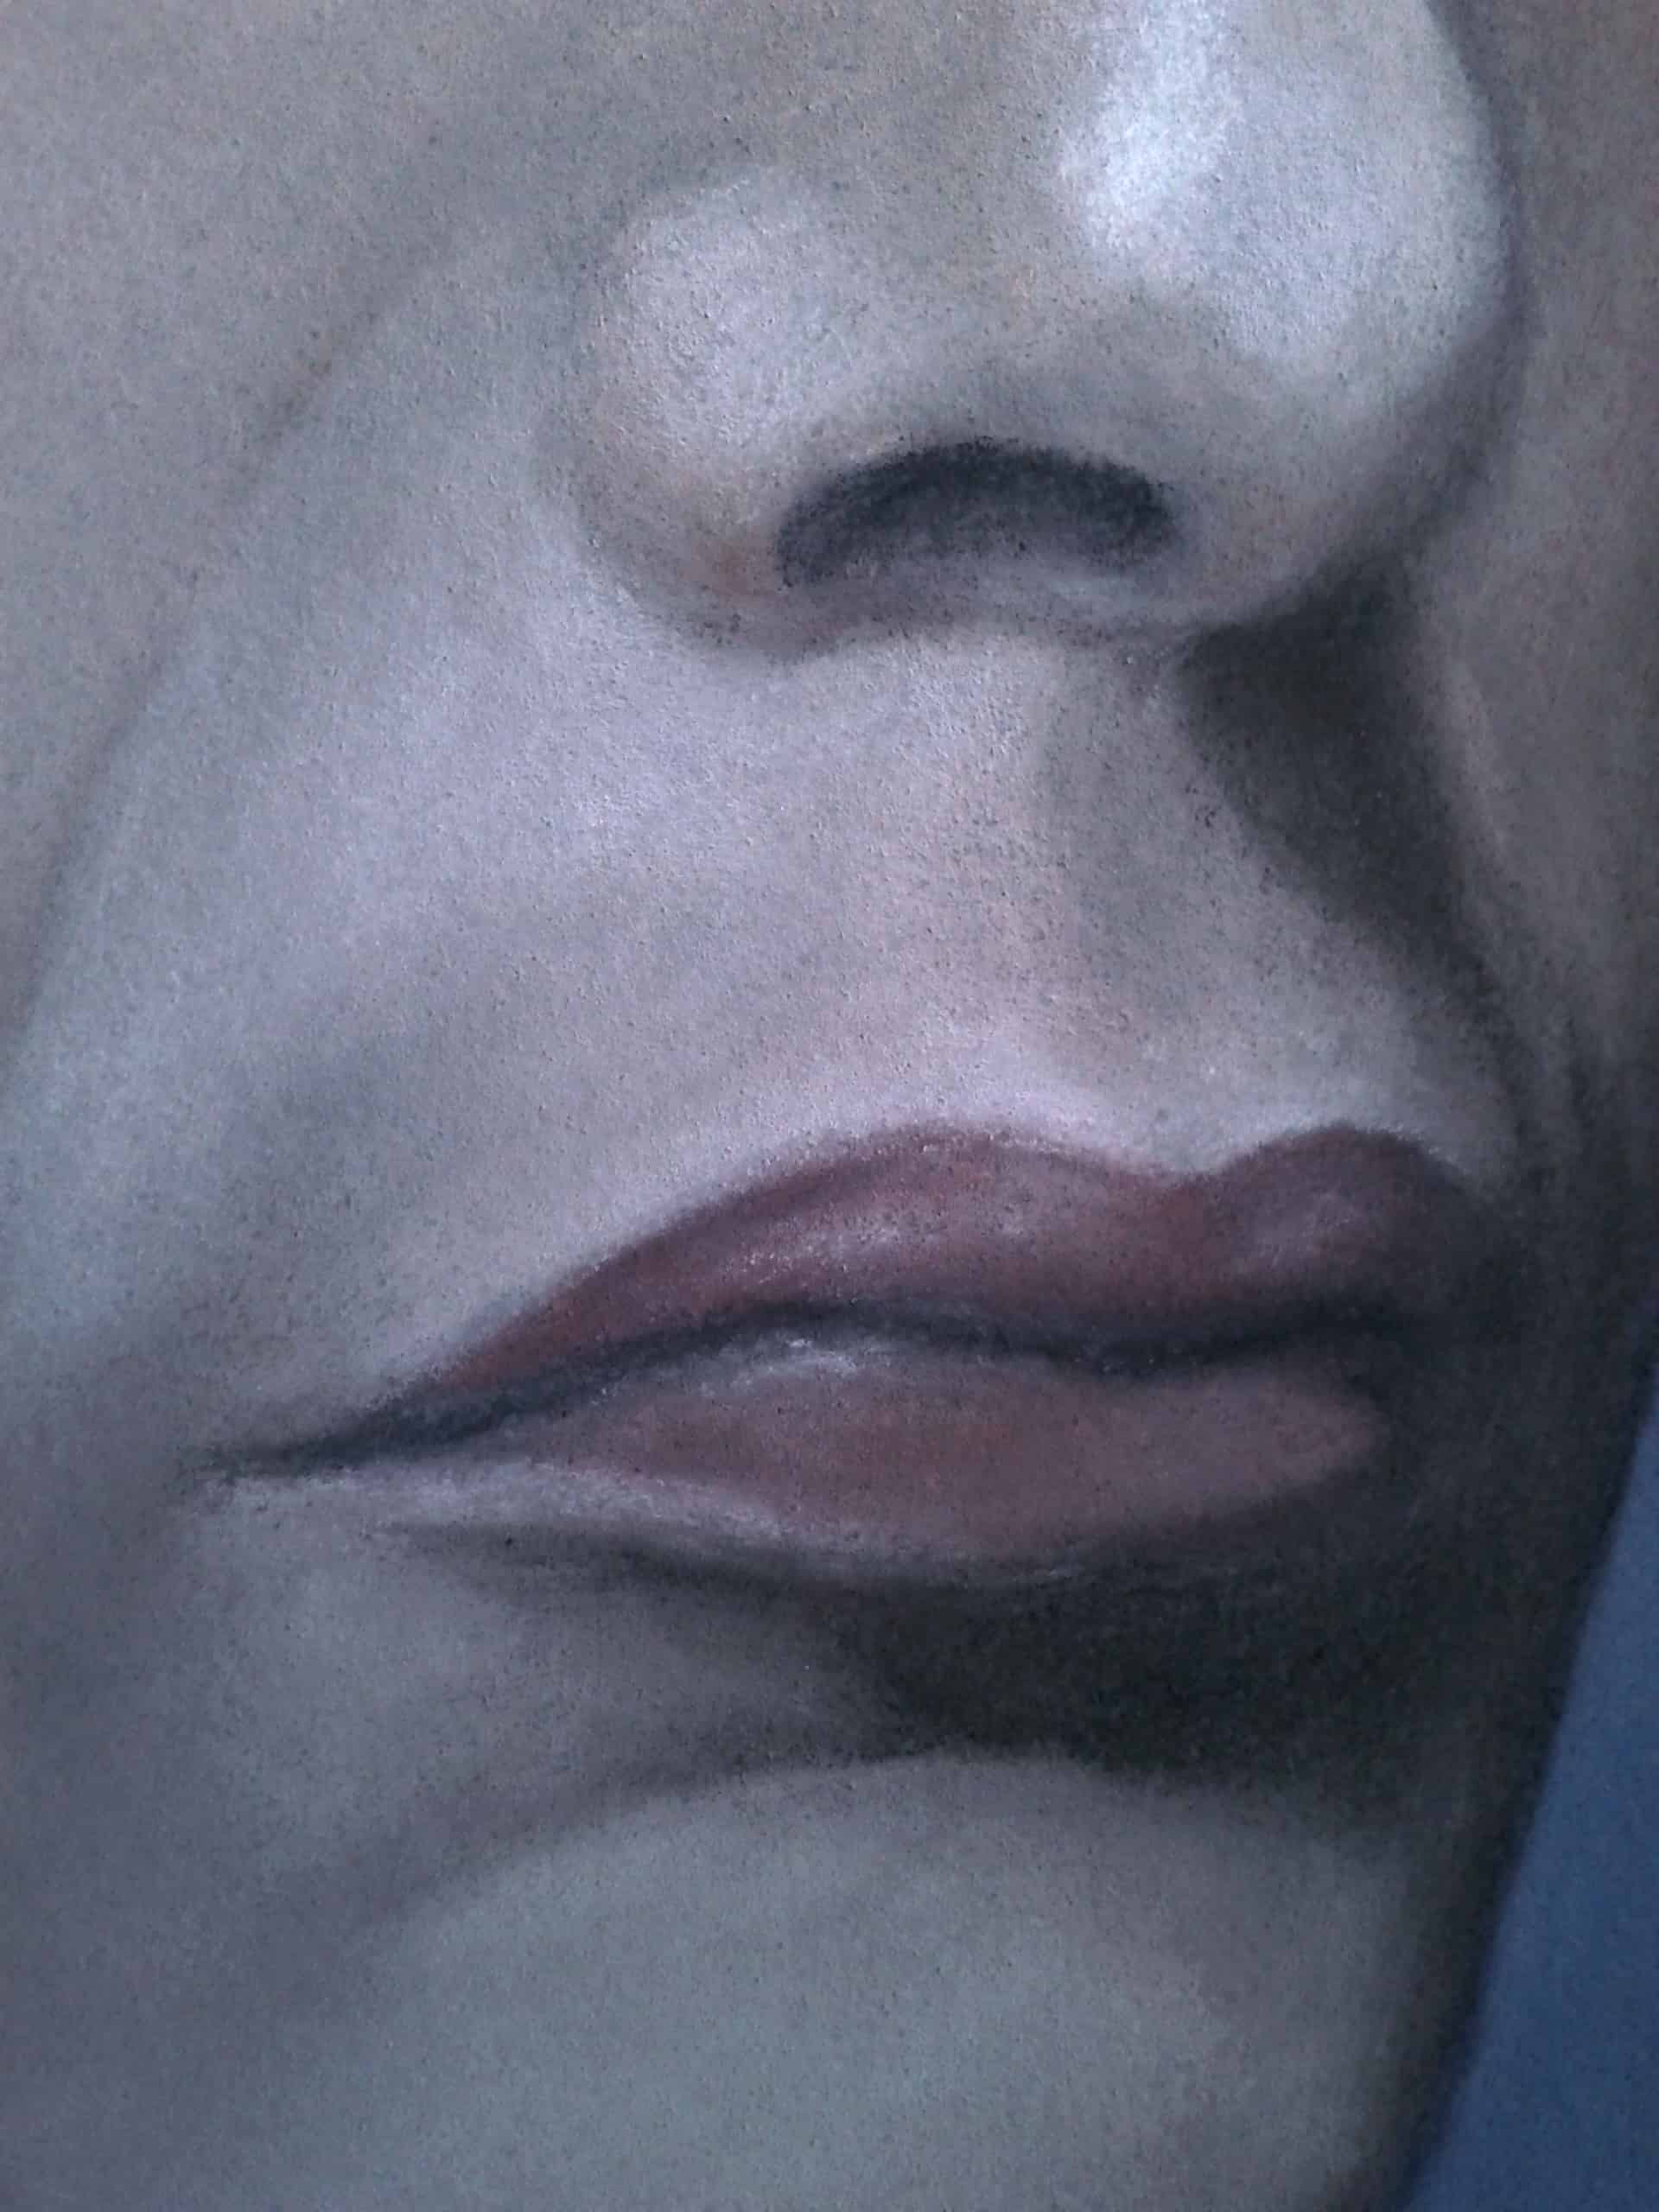 Hannibal portrait (mouth close-up)